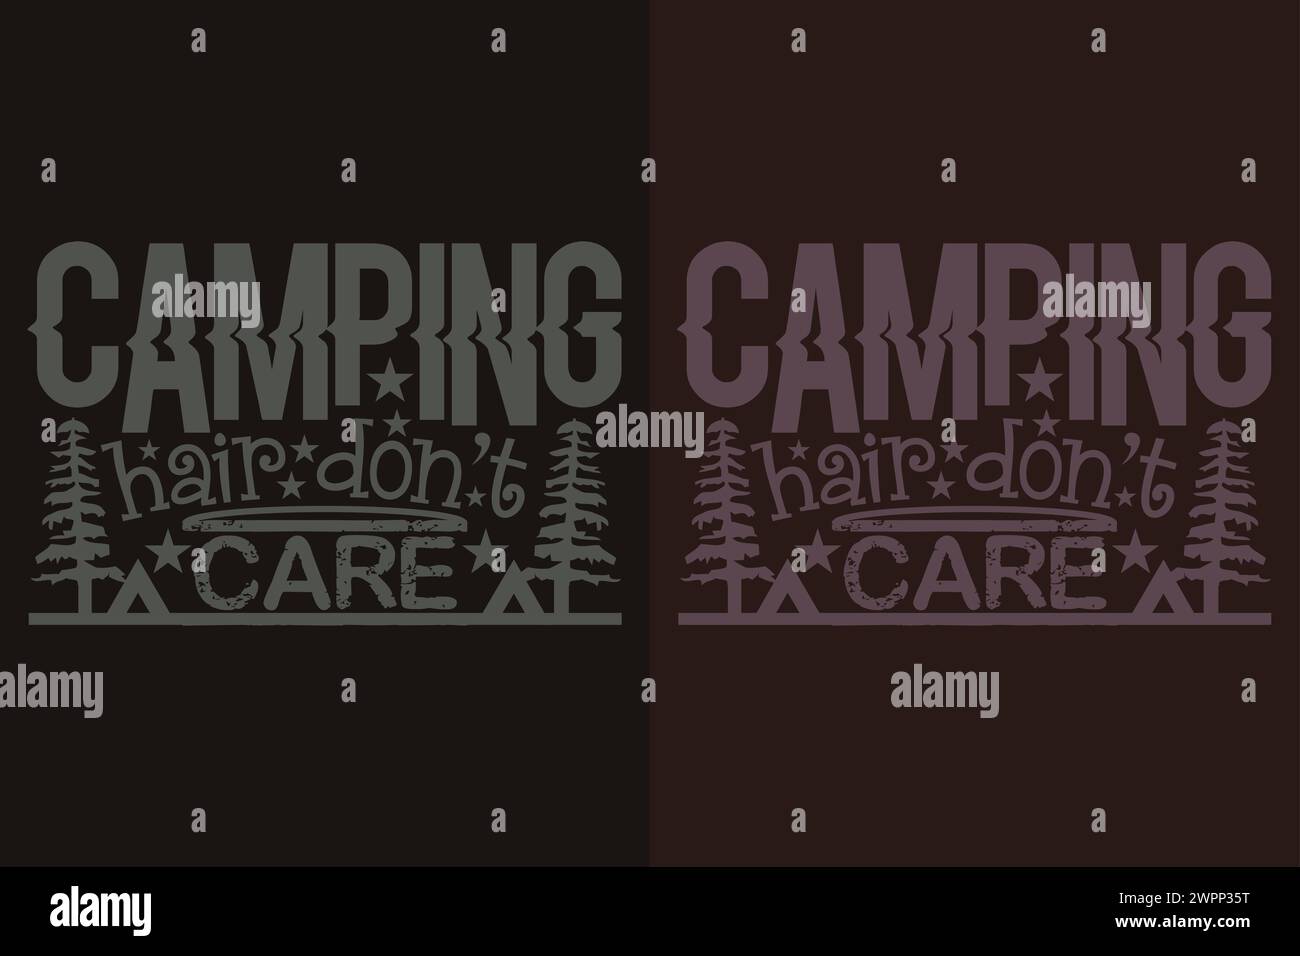 Chemise de camping, chemise extérieure, chemise de montagne, chemise d'amoureux de camping, chemise d'aventure, chemise de voyage, Camping cadeau, Camper, Camper cadeau, Camping Group Illustration de Vecteur